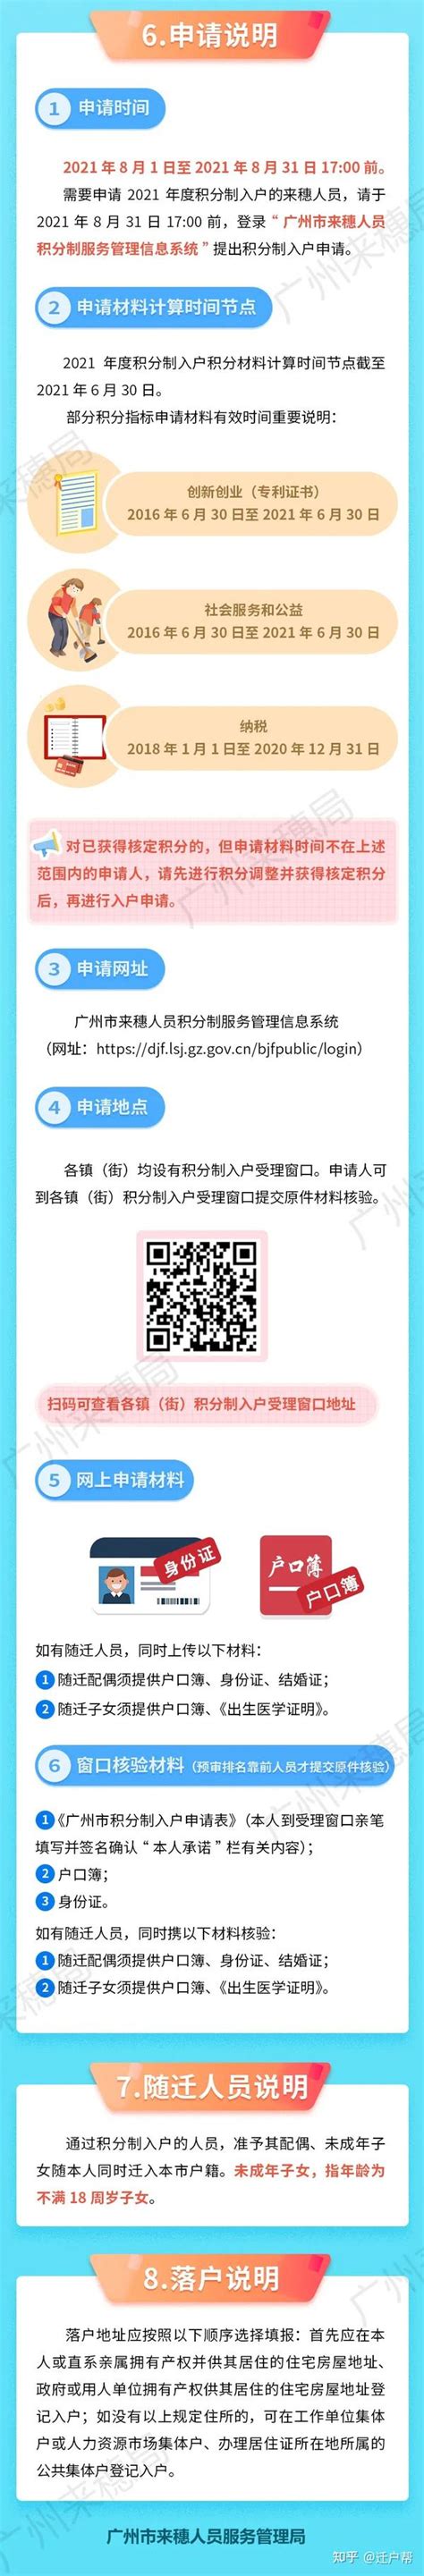 2022年广州市积分入学申请网址及操作指引(操作指南)(2)_小升初网